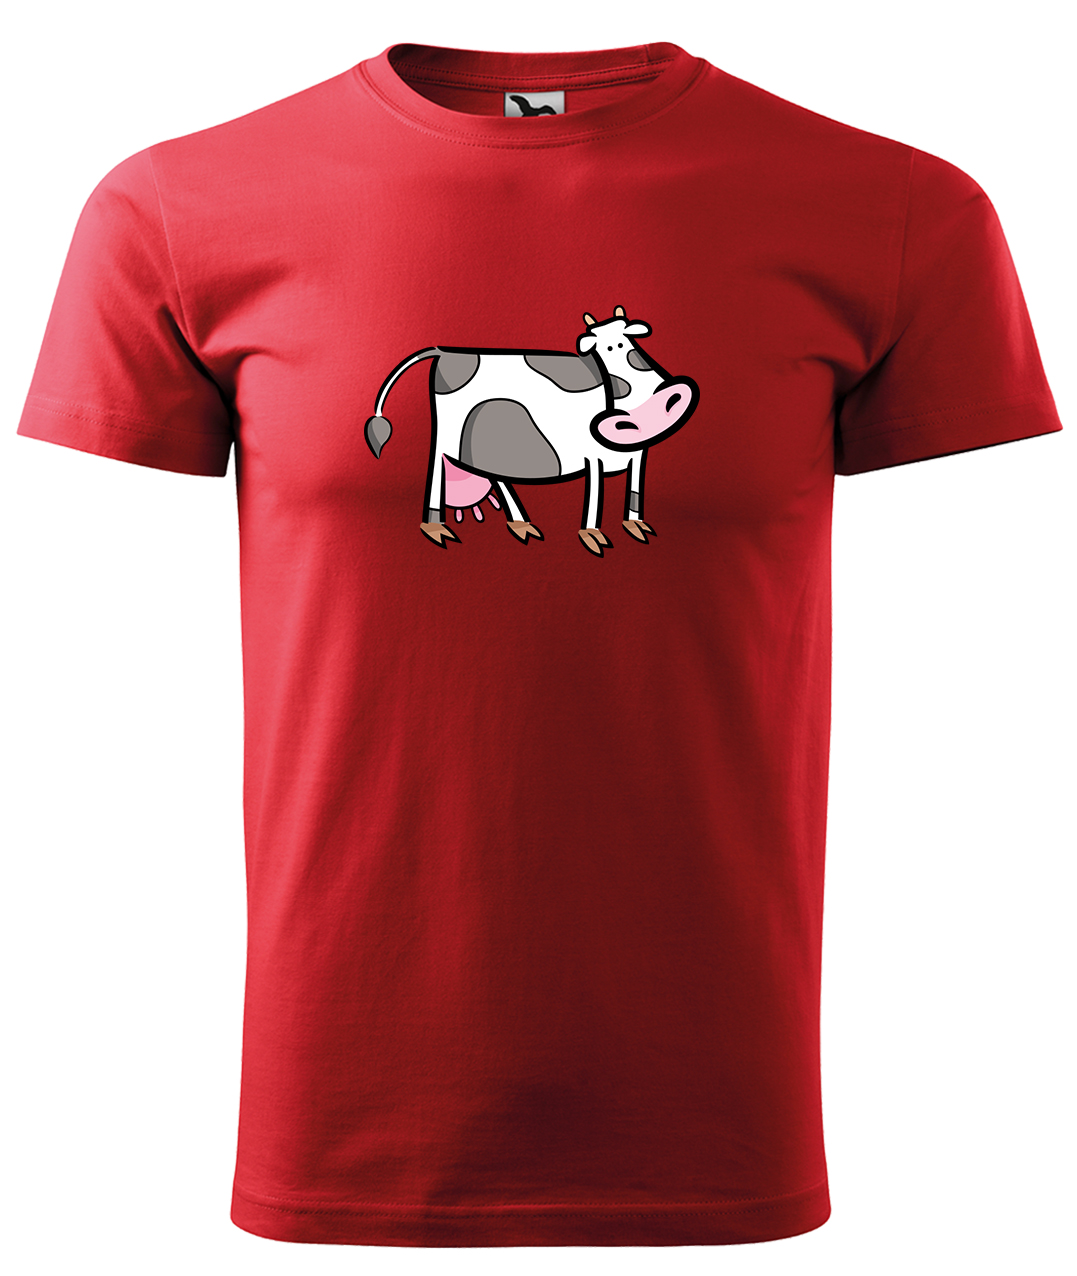 Dětské tričko s krávou - Kravička Velikost: 12 let / 158 cm, Barva: Červená (07), Délka rukávu: Krátký rukáv